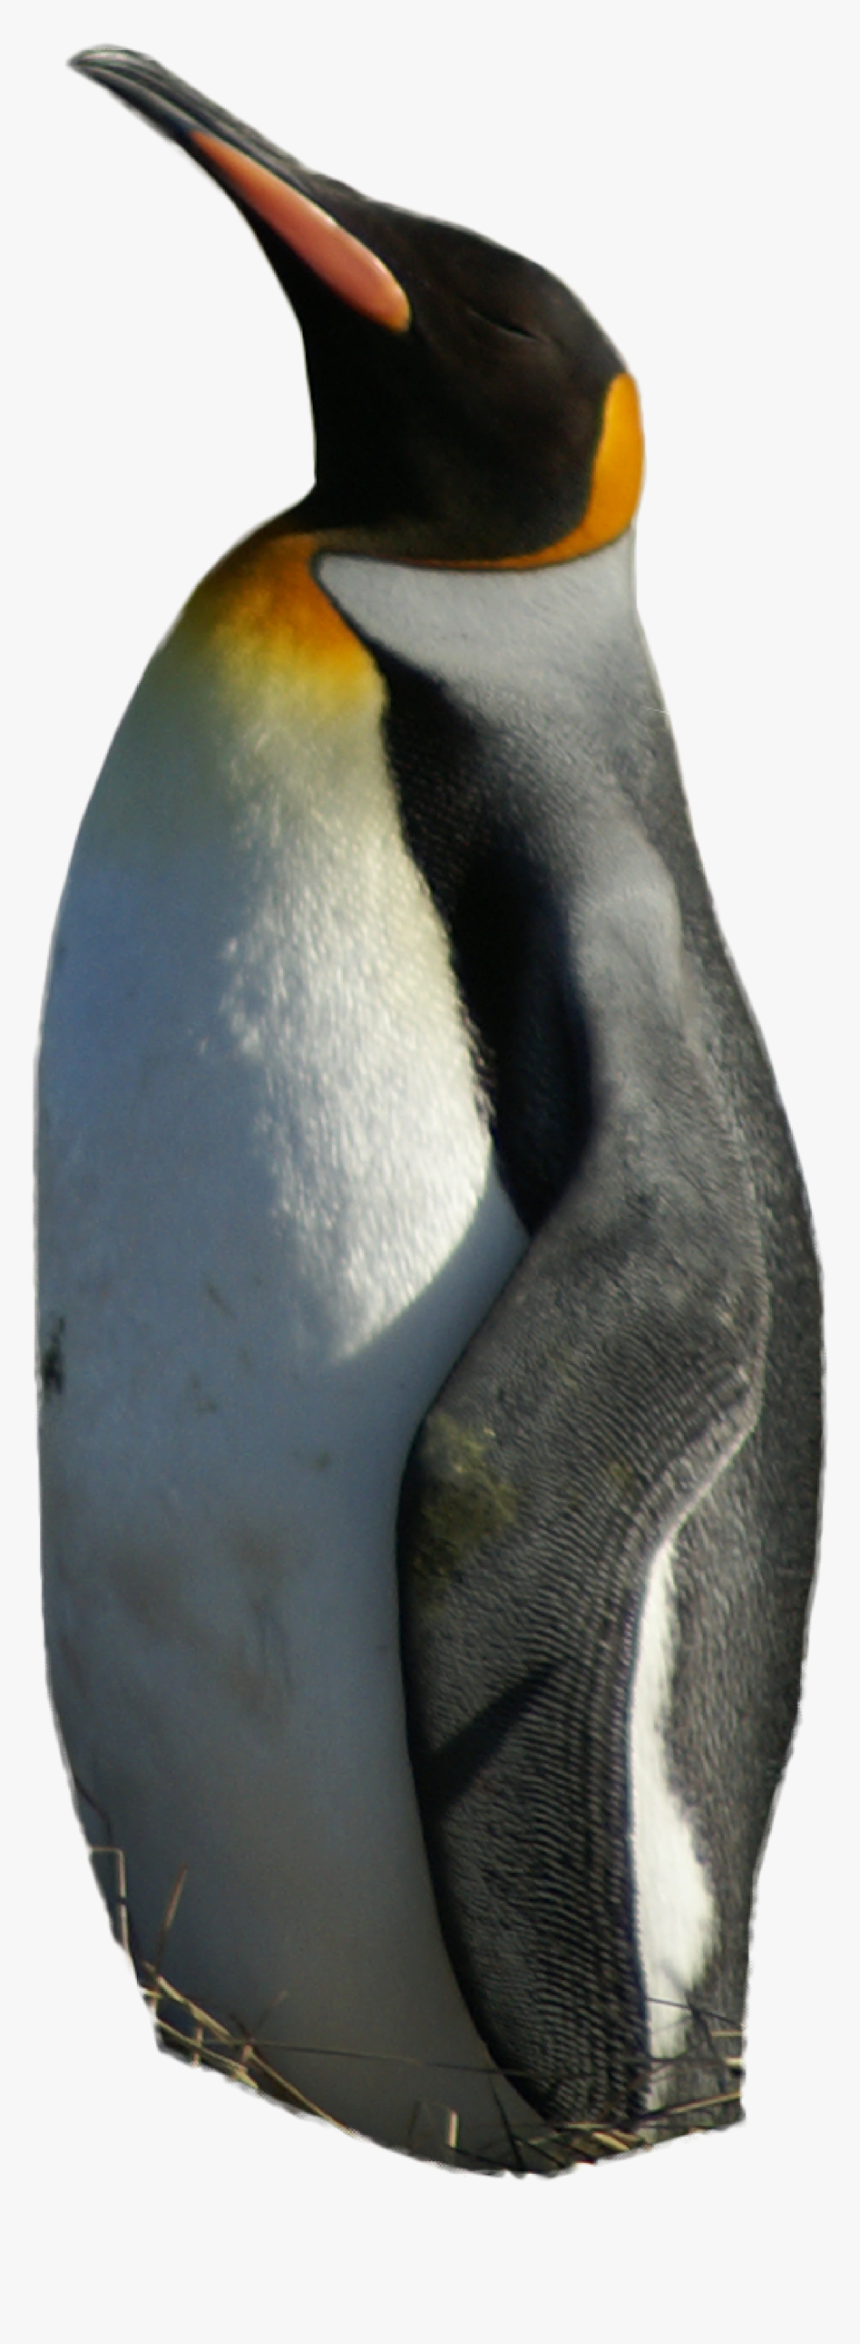 Emperor Penguin Png, Transparent Png, Free Download